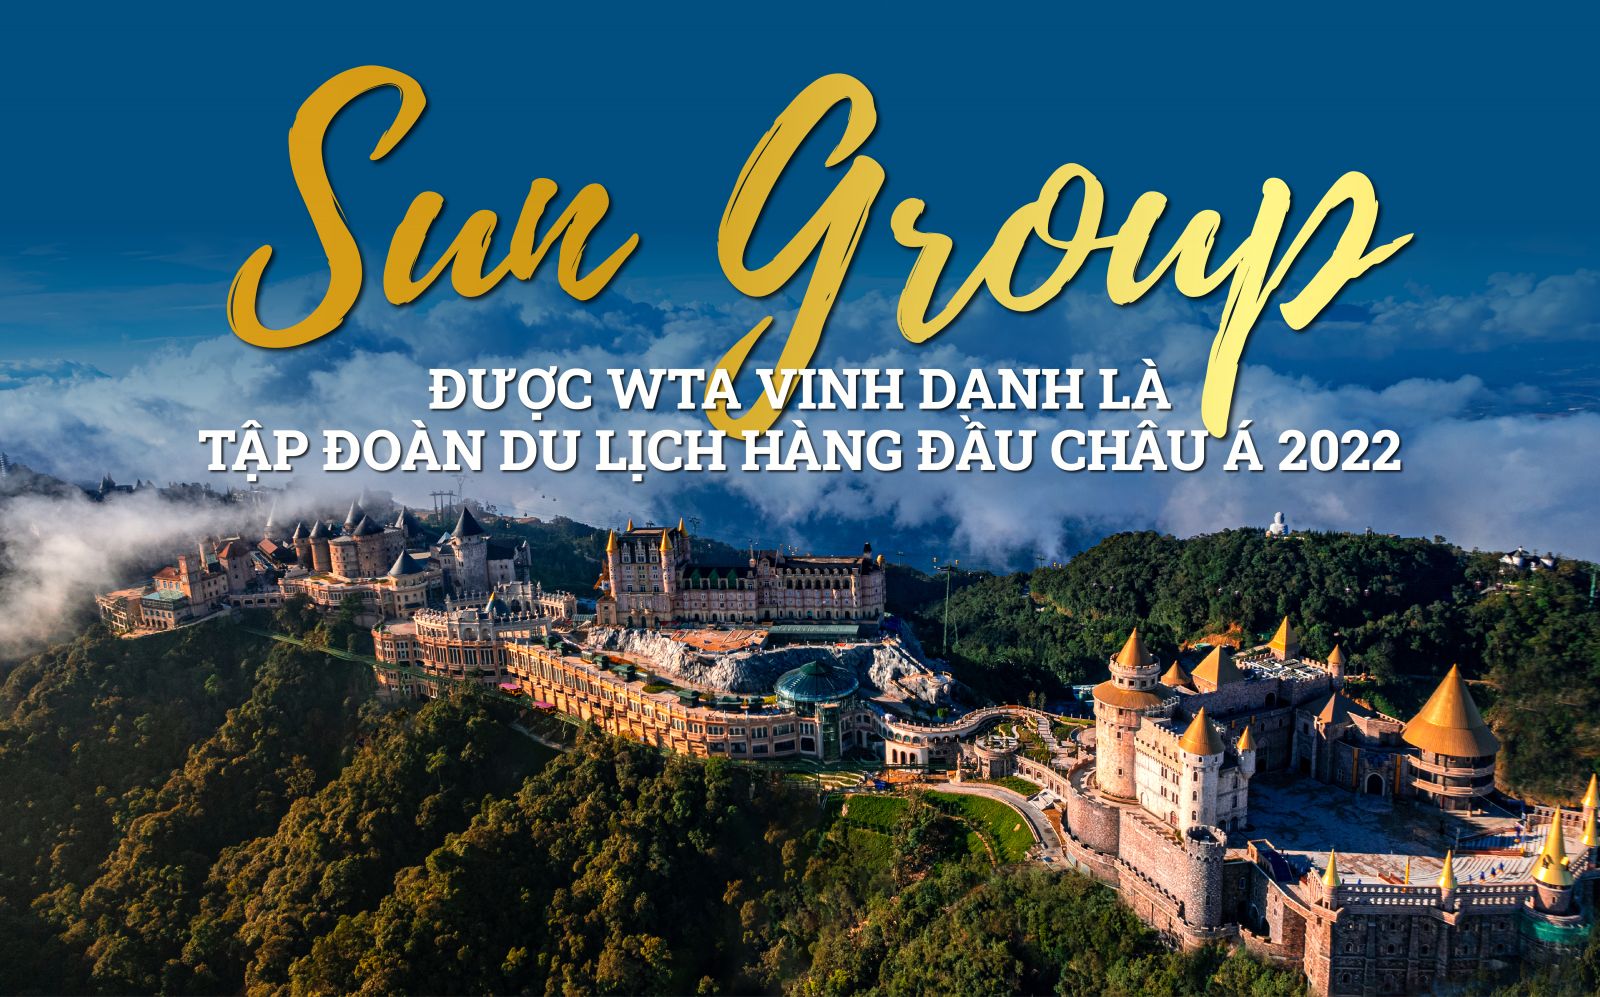 Sun Group được WTA vinh danh là Tập đoàn du lịch hàng đầu châu Á 2022 